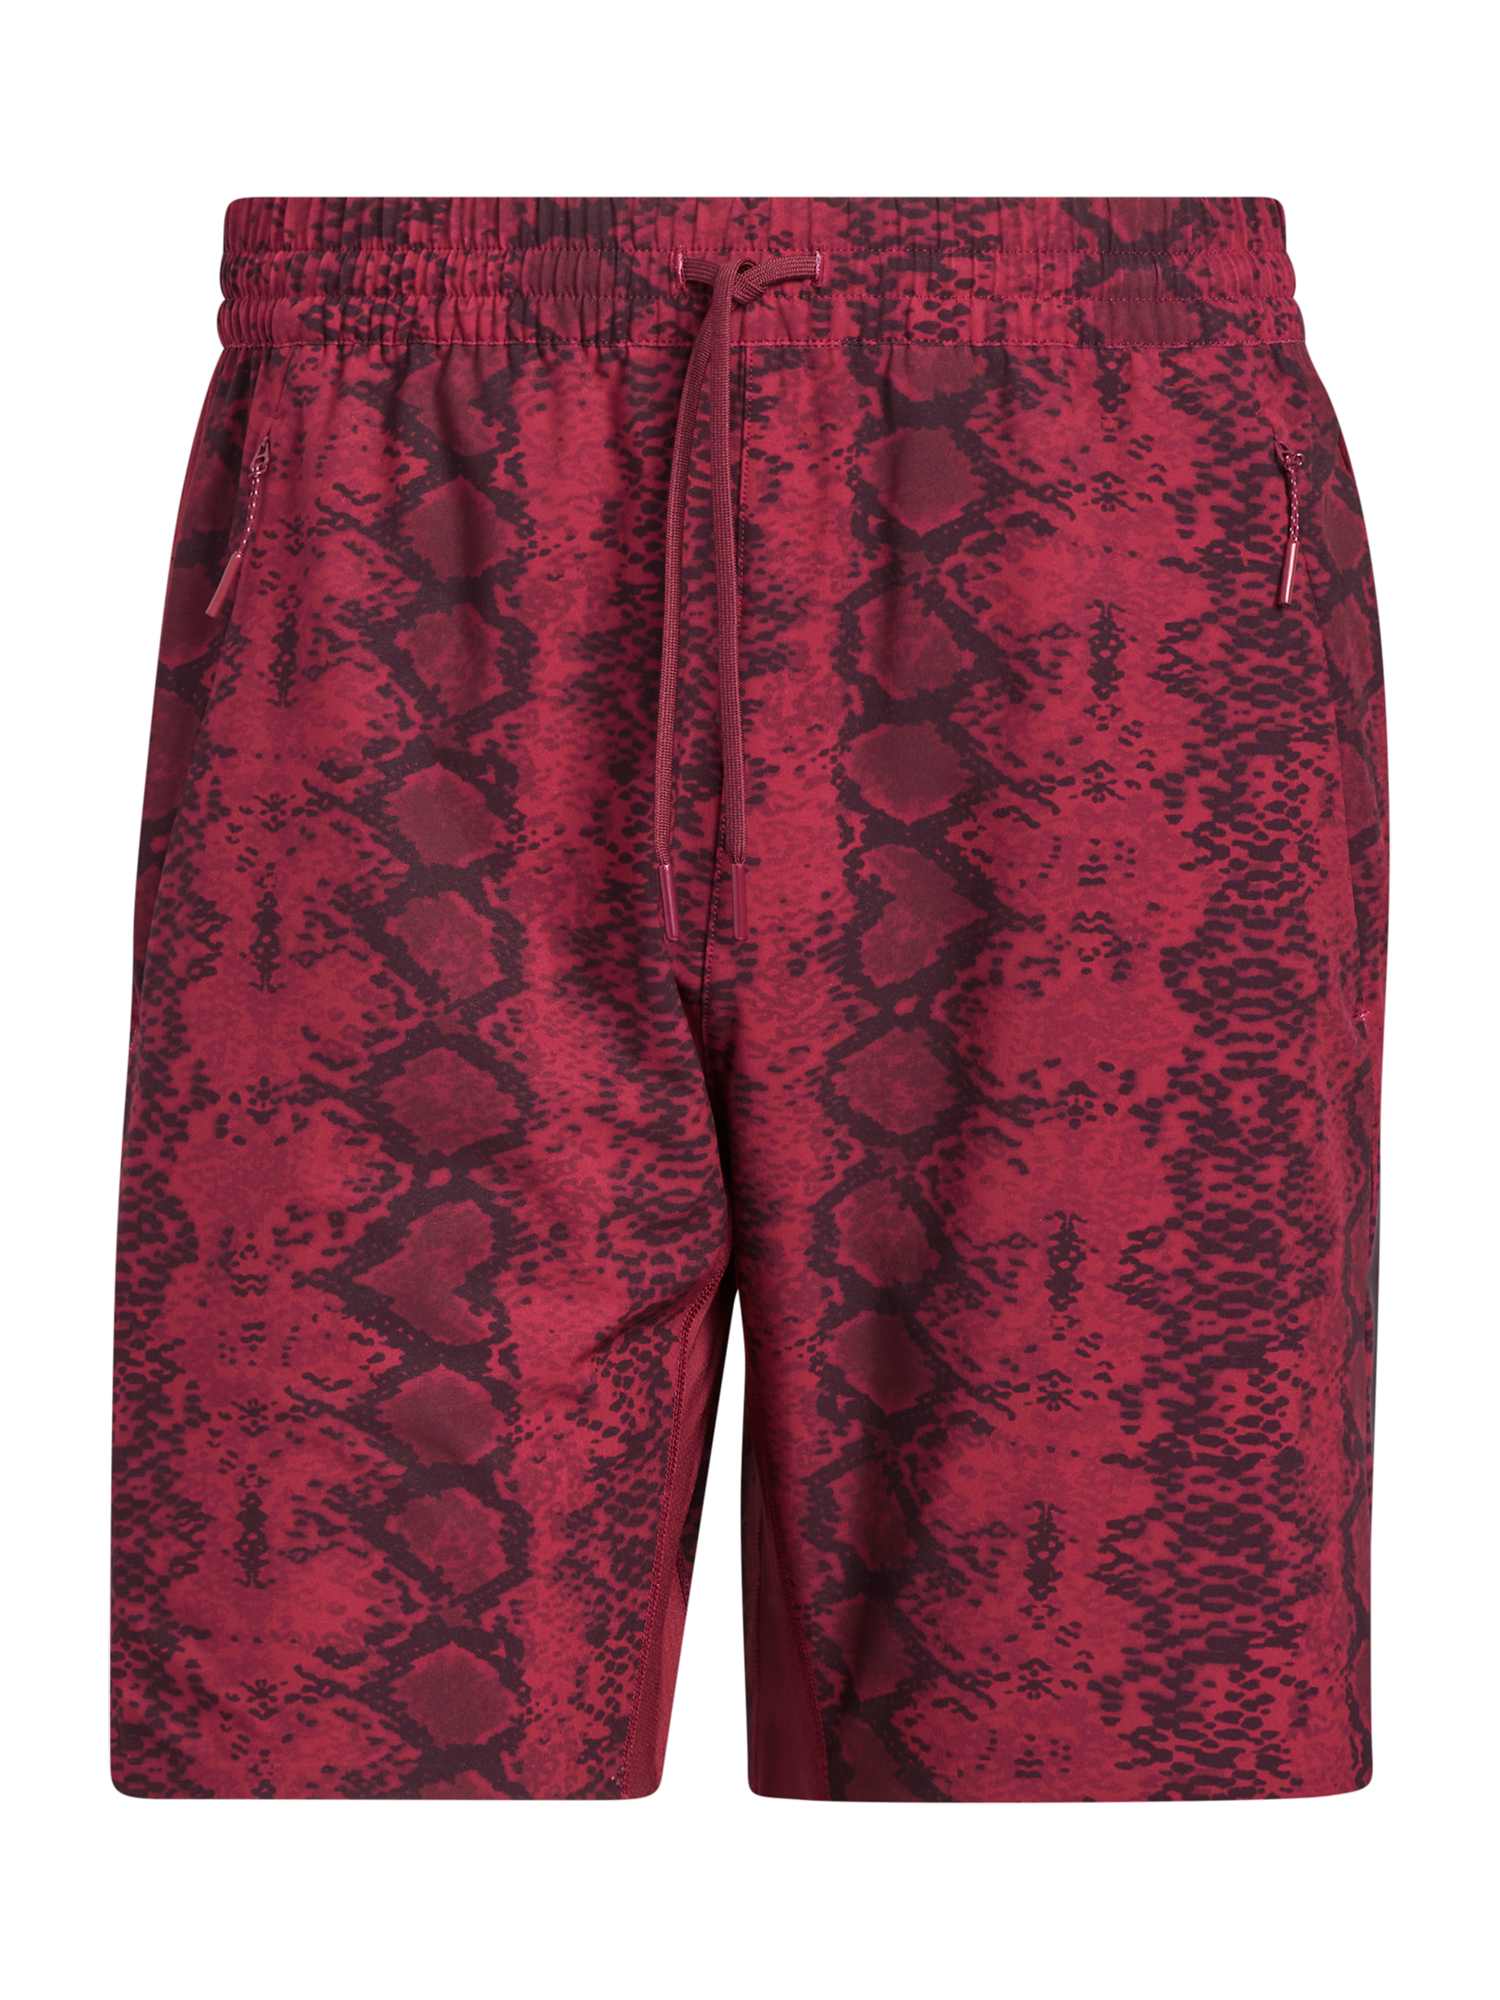 Odzież Mężczyźni ADIDAS ORIGINALS Spodnie IVP w kolorze Wiśniowo-Czerwonym 